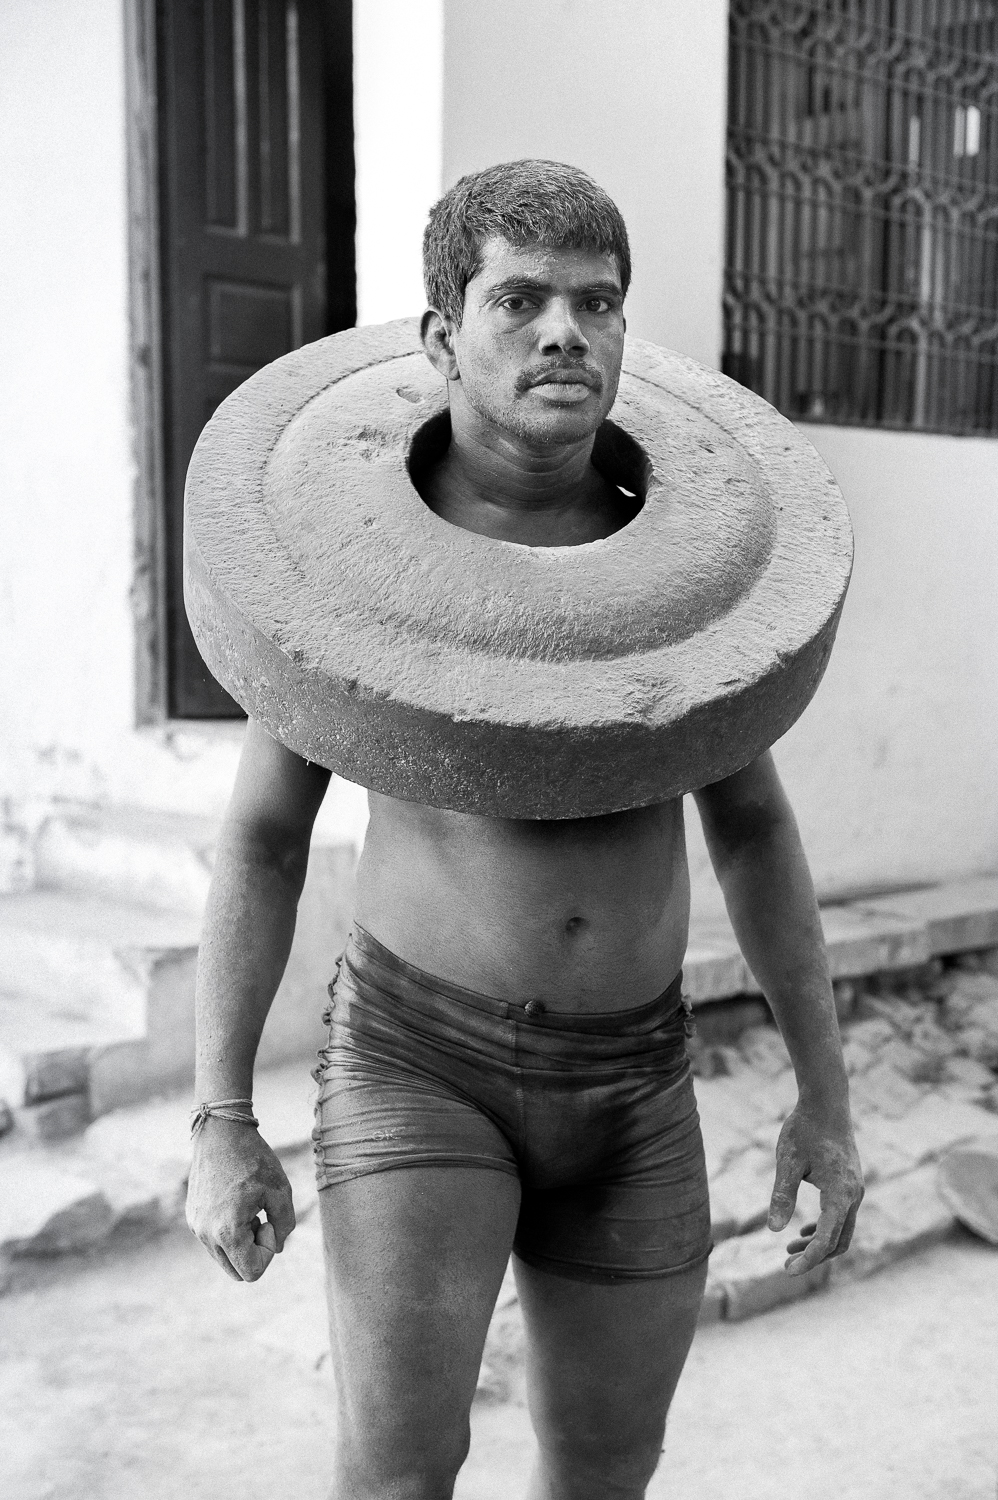  Kushti Wrestler exercising with concrete slab, Varanasi, 2019 